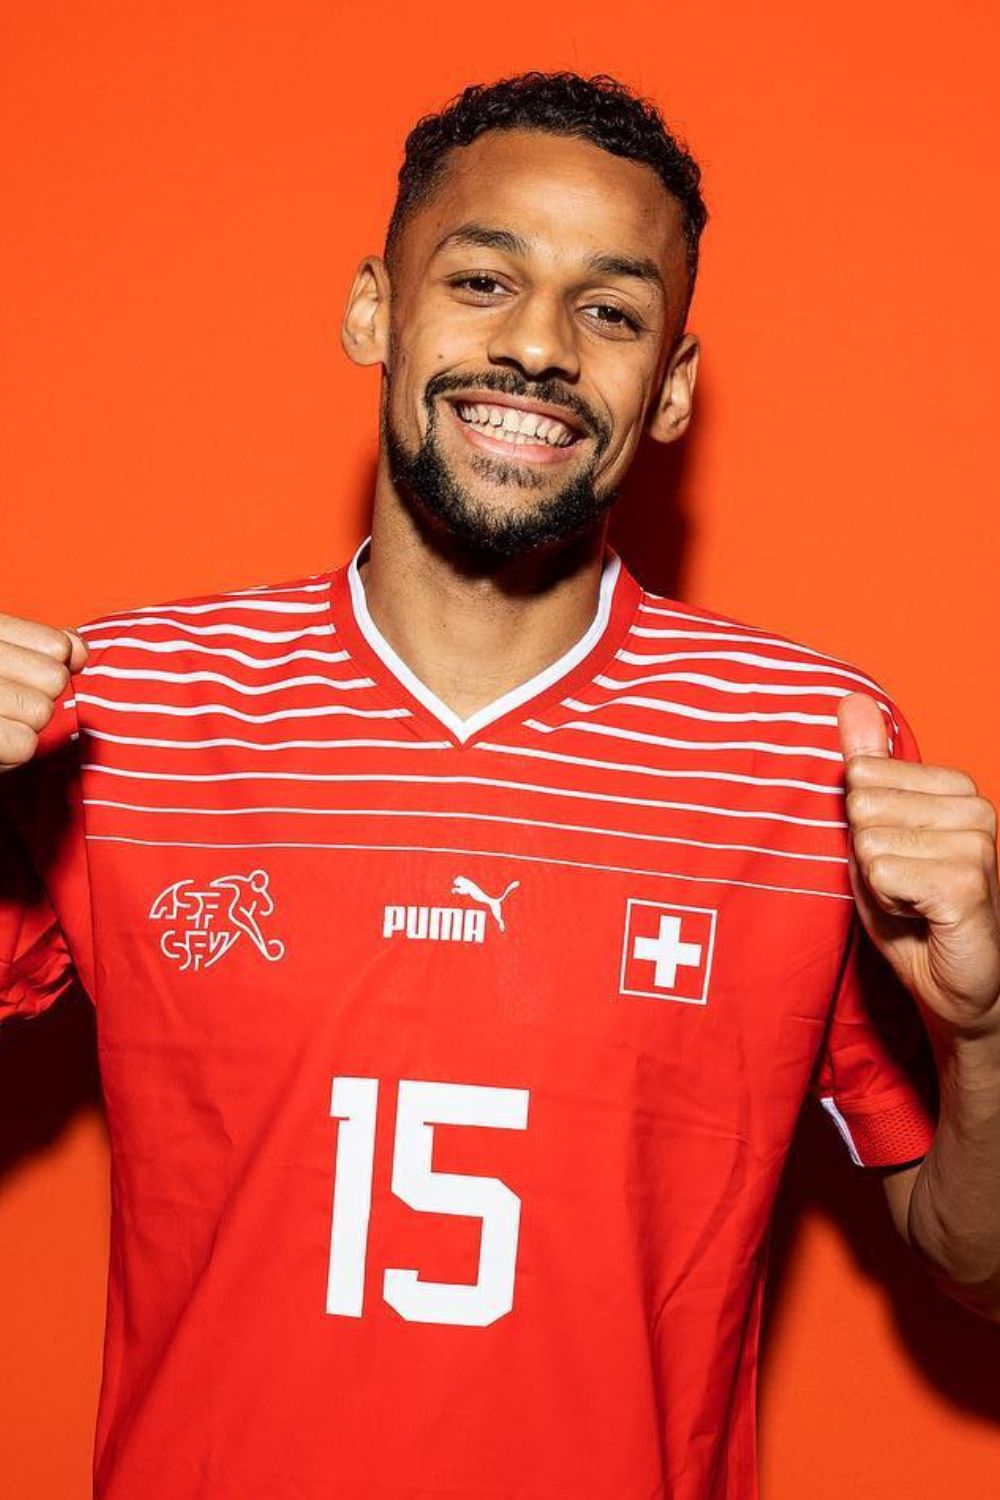 Djibril Sowa A Swiss Professional Soccer Player